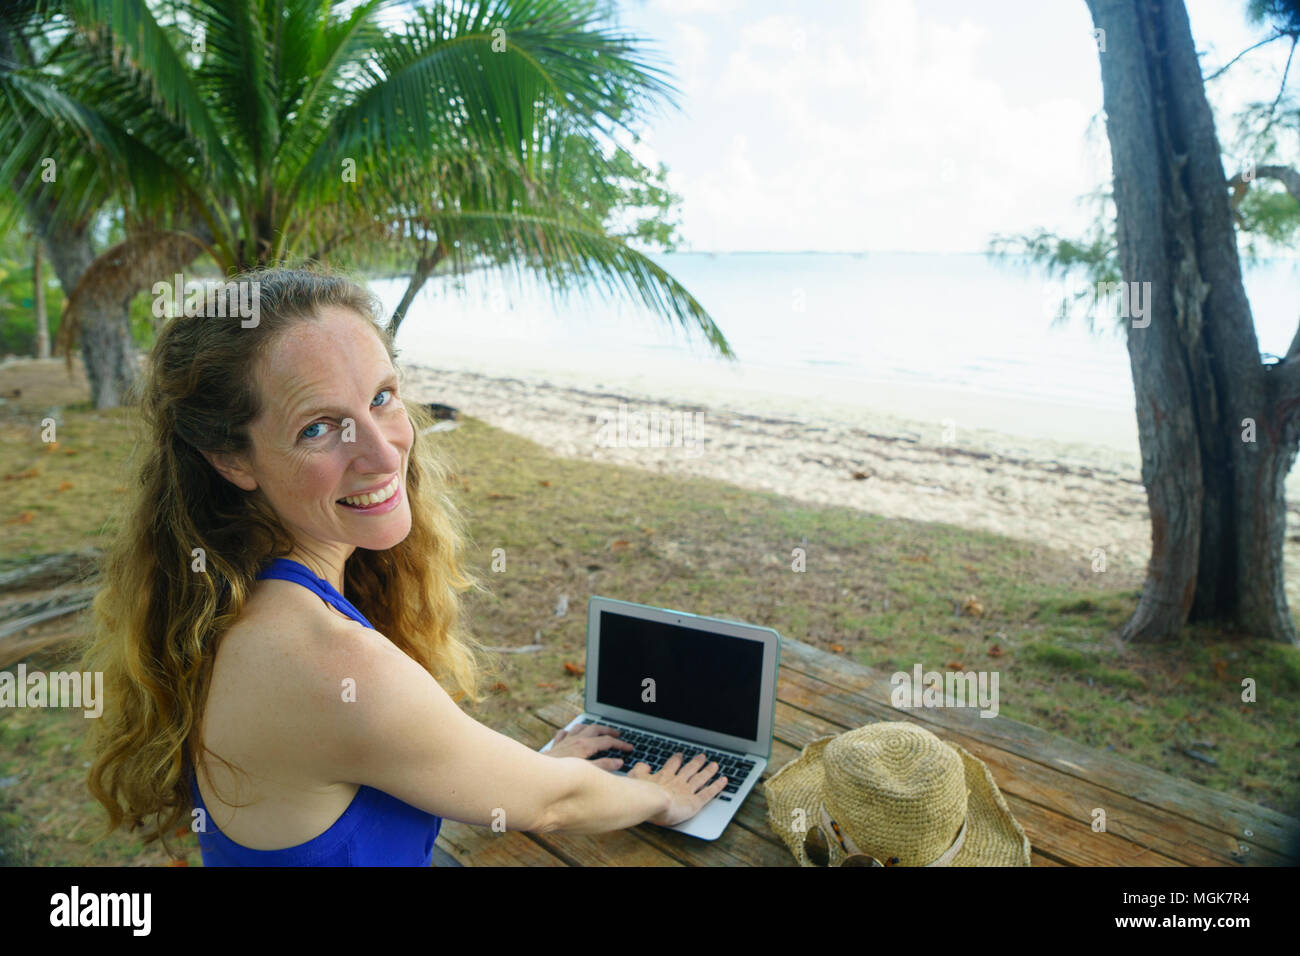 Digital nomad Arbeiten von einer Insel Strand mit Palmen und Sandstrand  Stockfotografie - Alamy